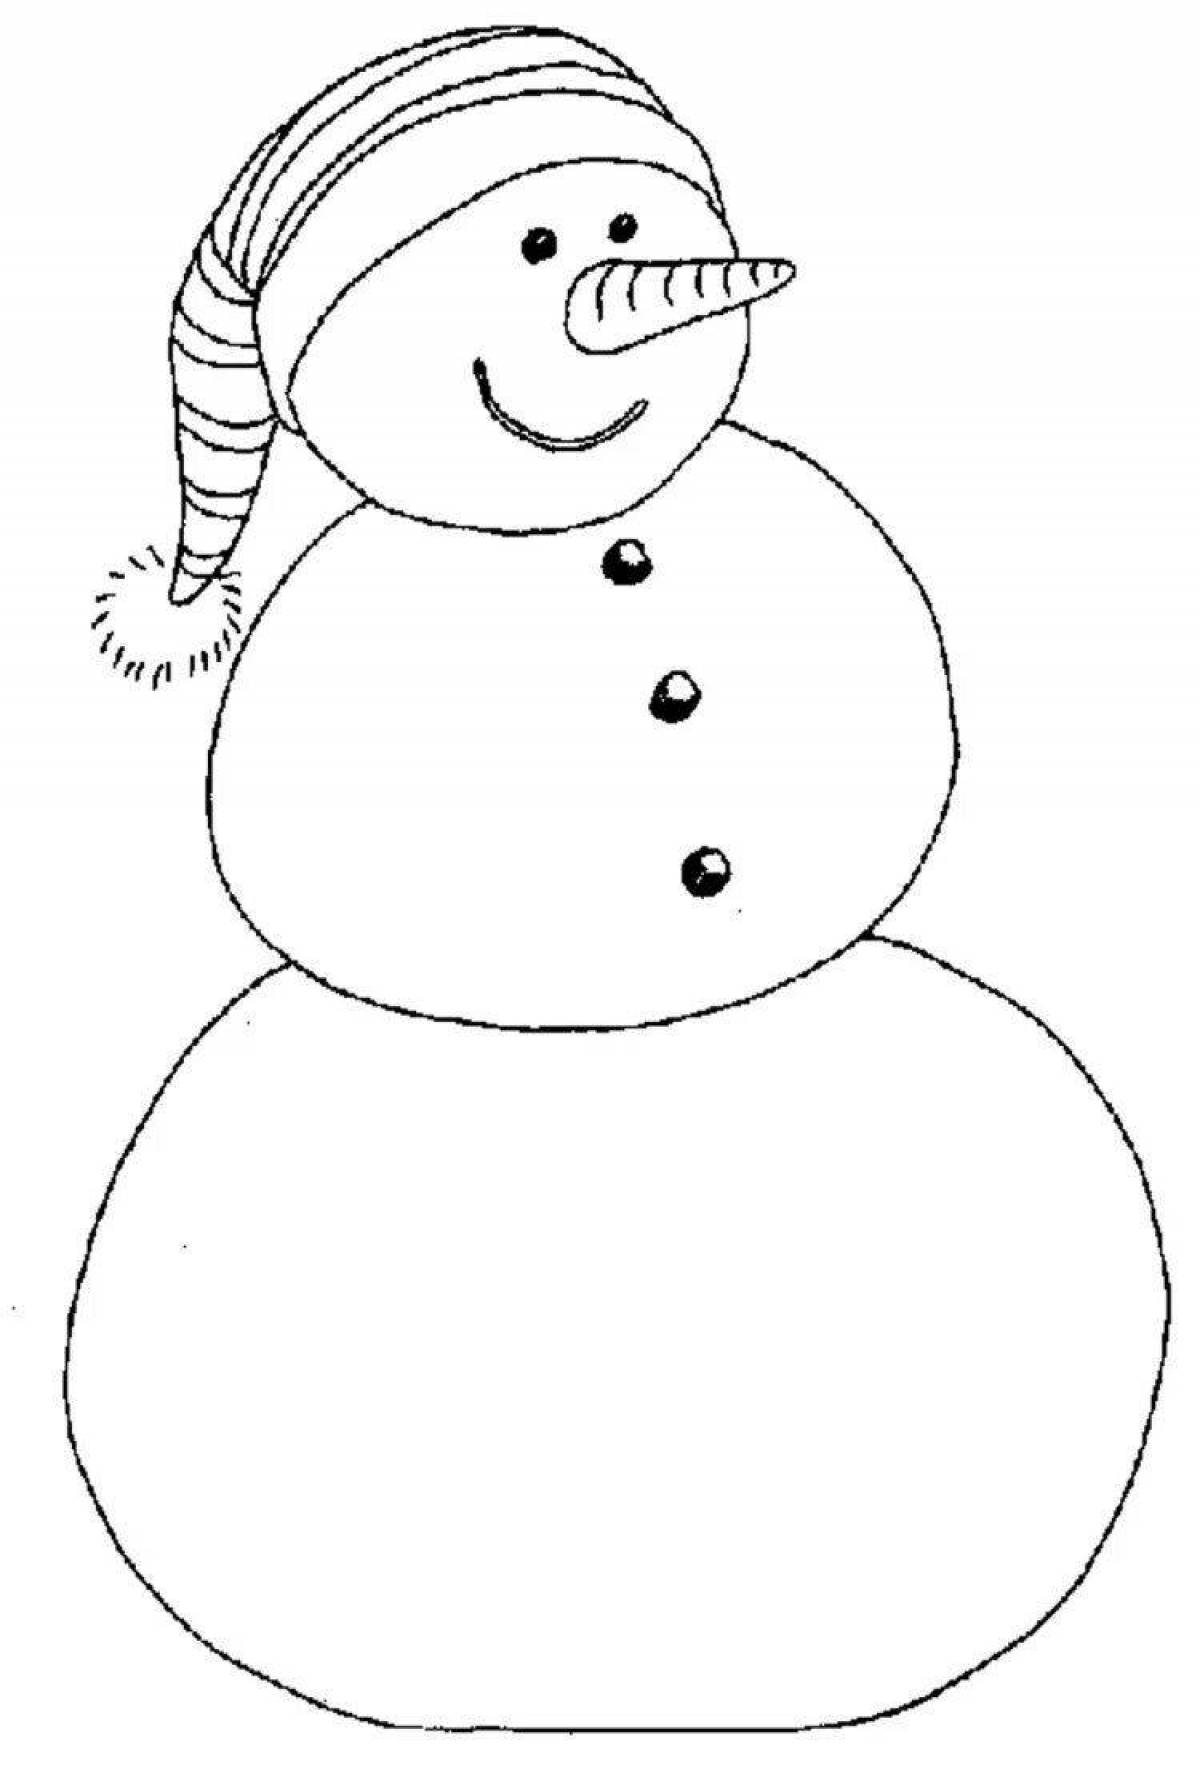 Креативная раскраска снеговик для детей 3-4 лет